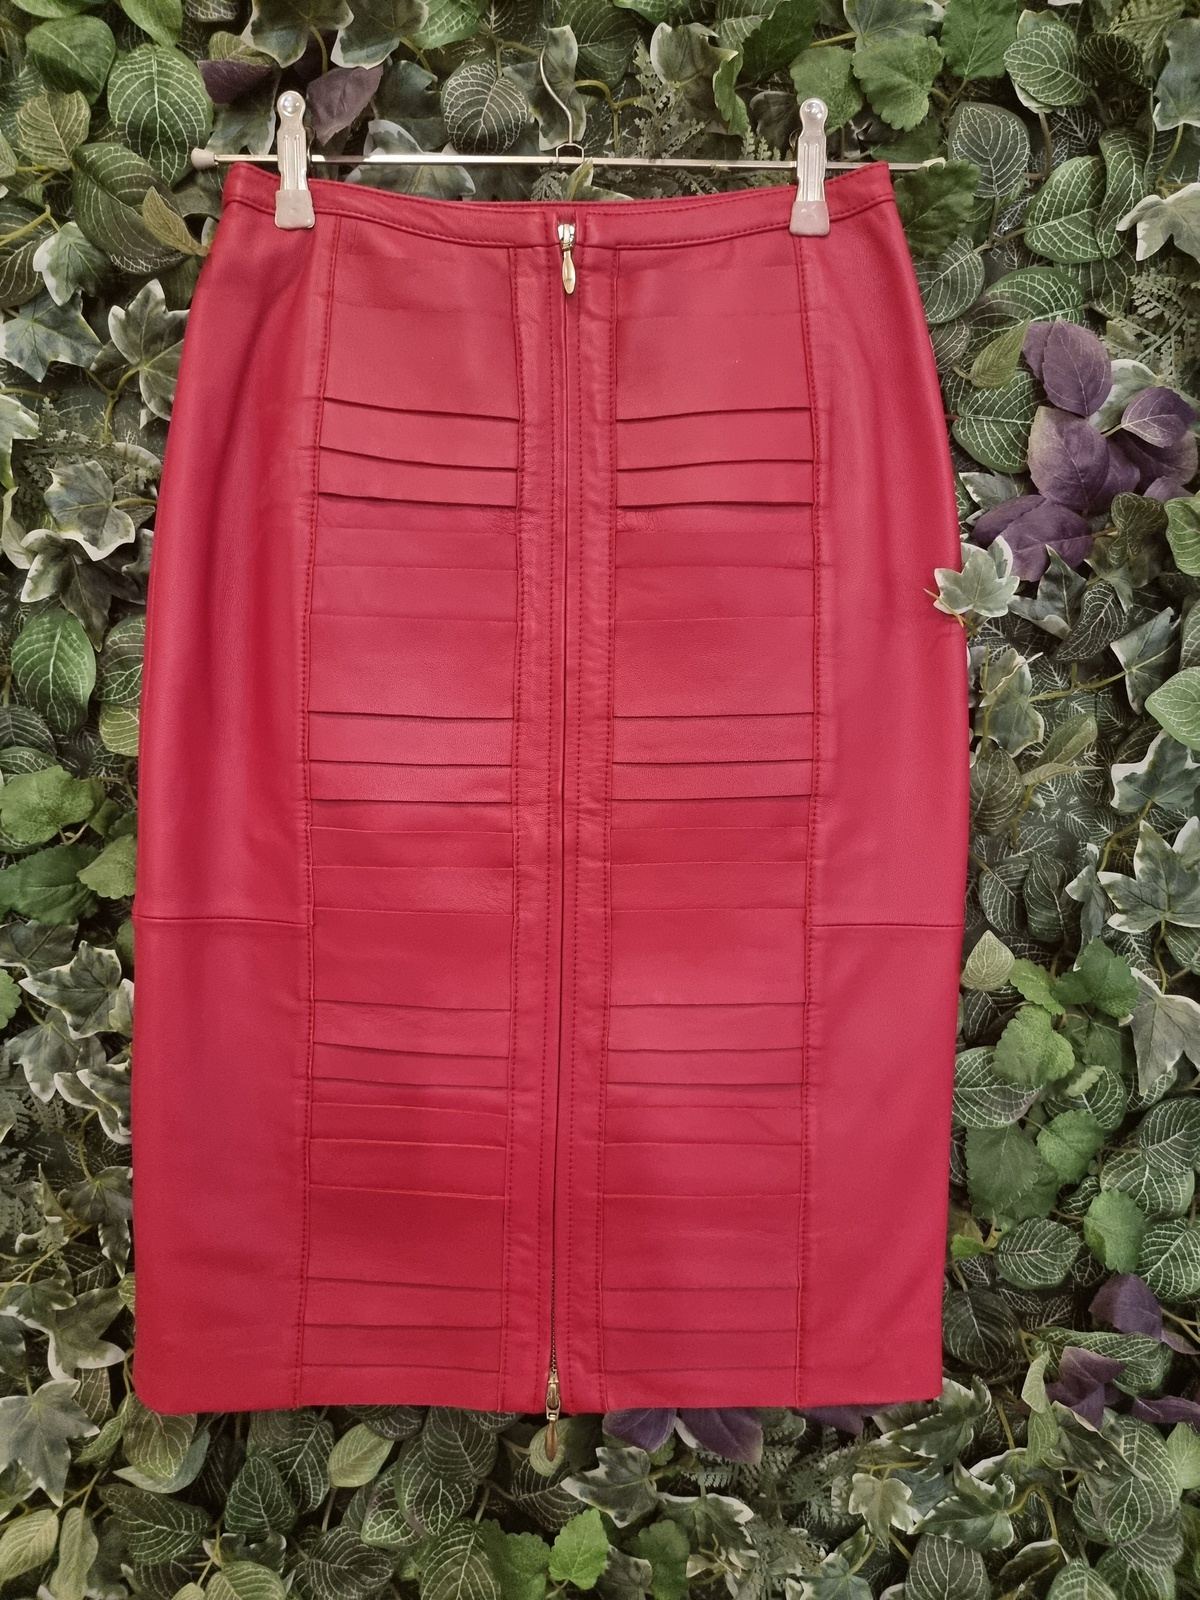 Designer New Rebecca Vallance Leather Skirt